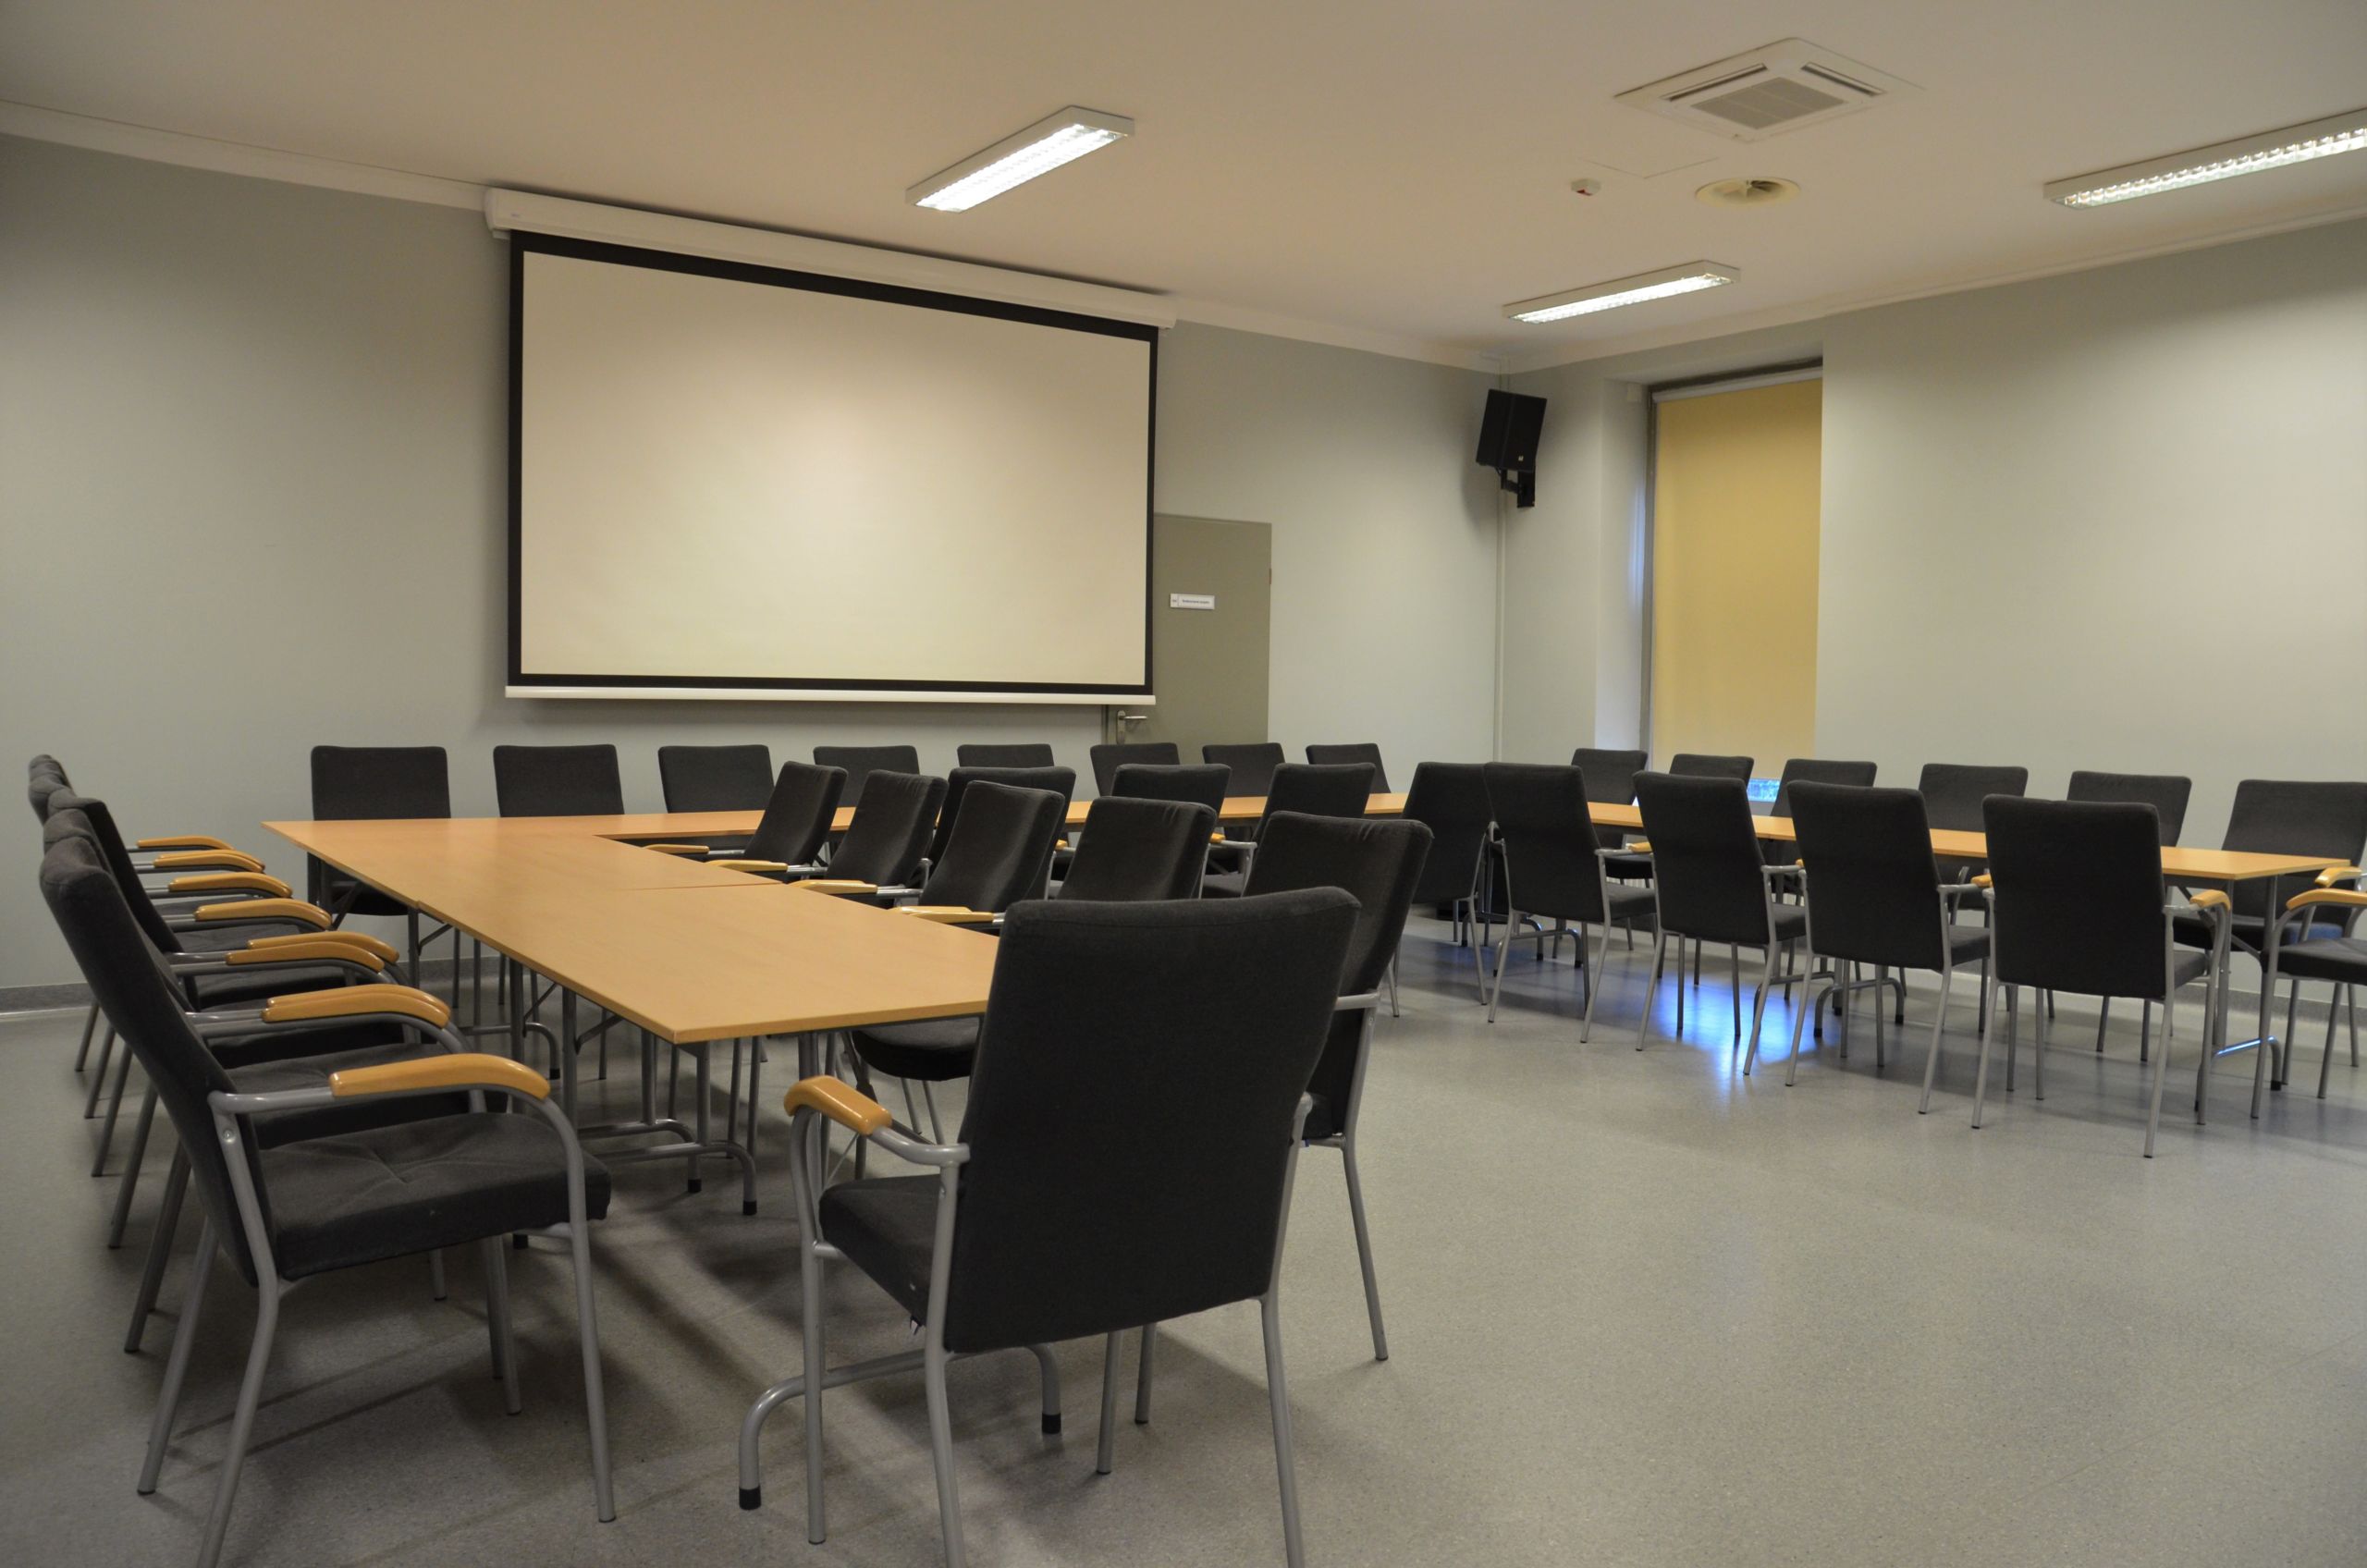 Zdjęcie przedstawiające salę konferencyjną. Przedstawia stoły ułożone w kształt litery C. Po obu stronach stołu poustawiane są krzesła. Na ścianie znajduje się ekran do rzutnika, a w rogach sali znajdują się głośniki.